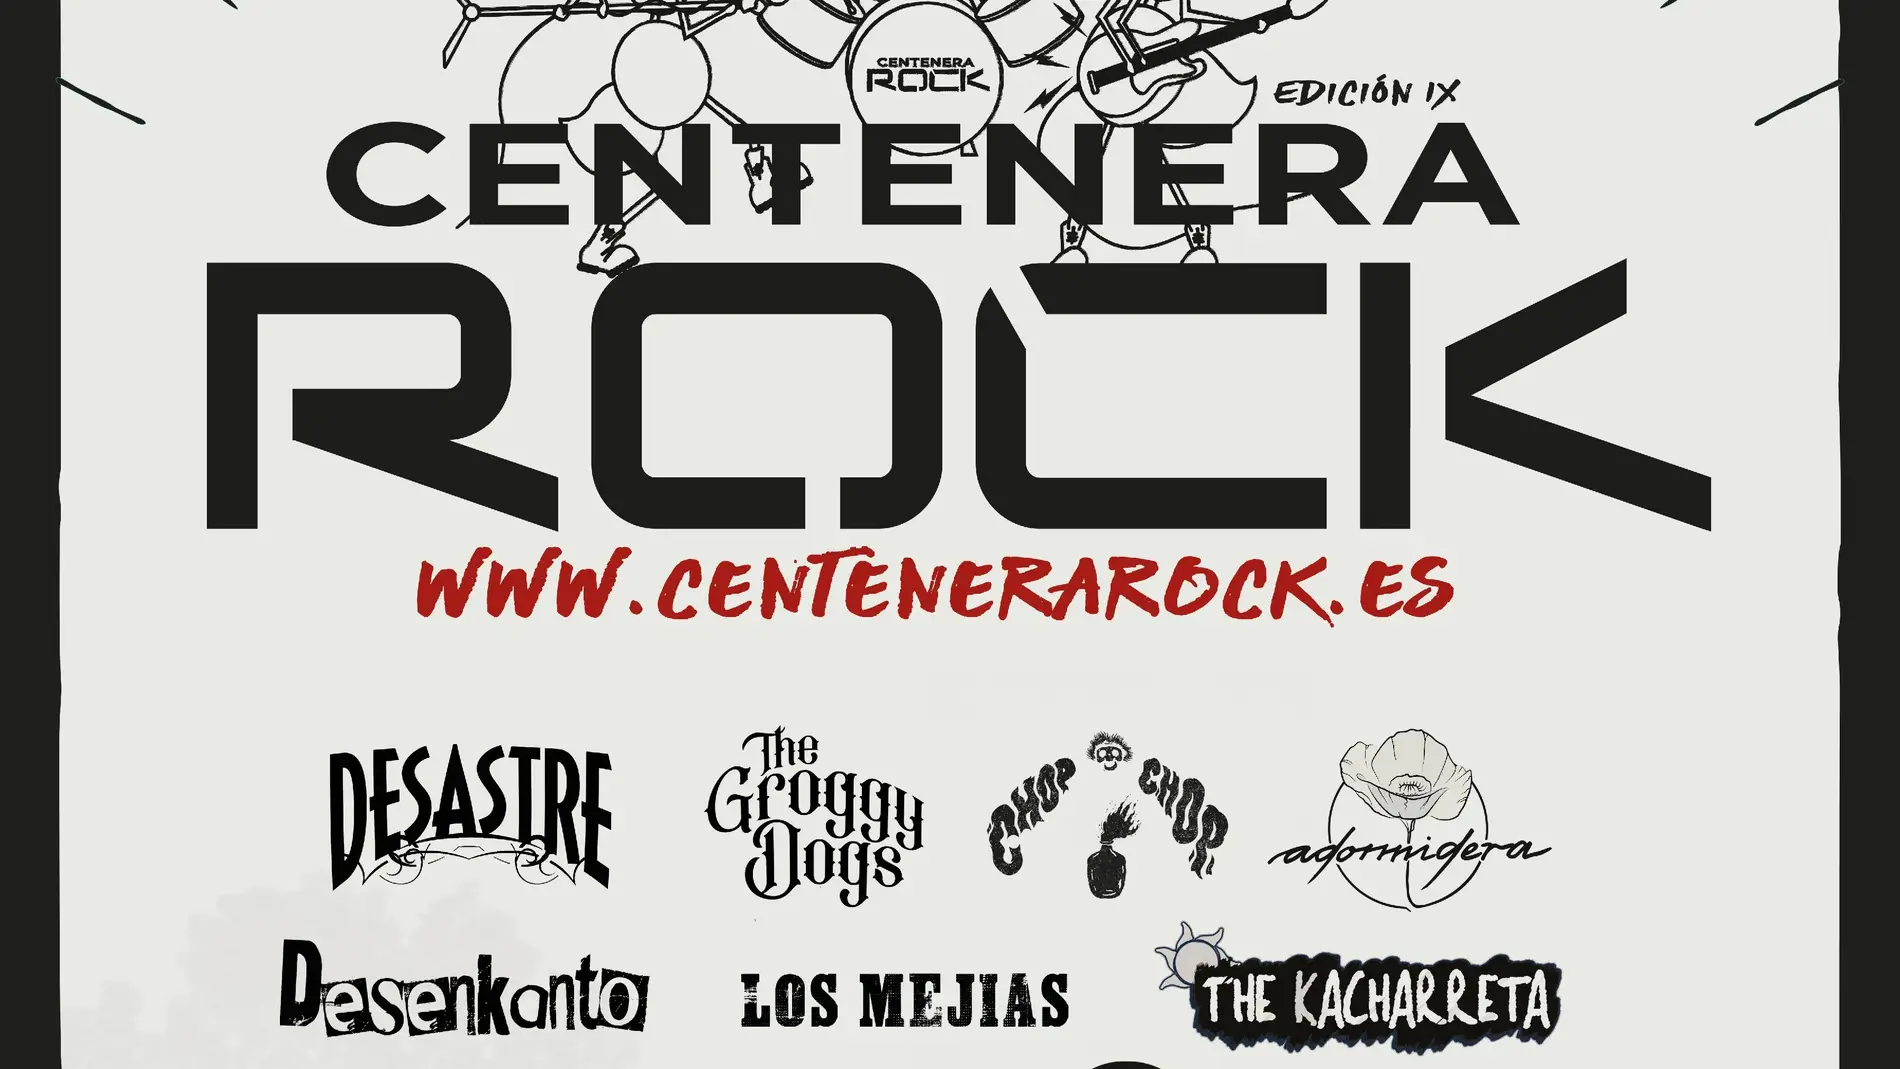 Aldeacentenera celebrará el 4 y 5 de agosto una nueva edición del Centenerarock con 13 bandas llegadas de todo el país